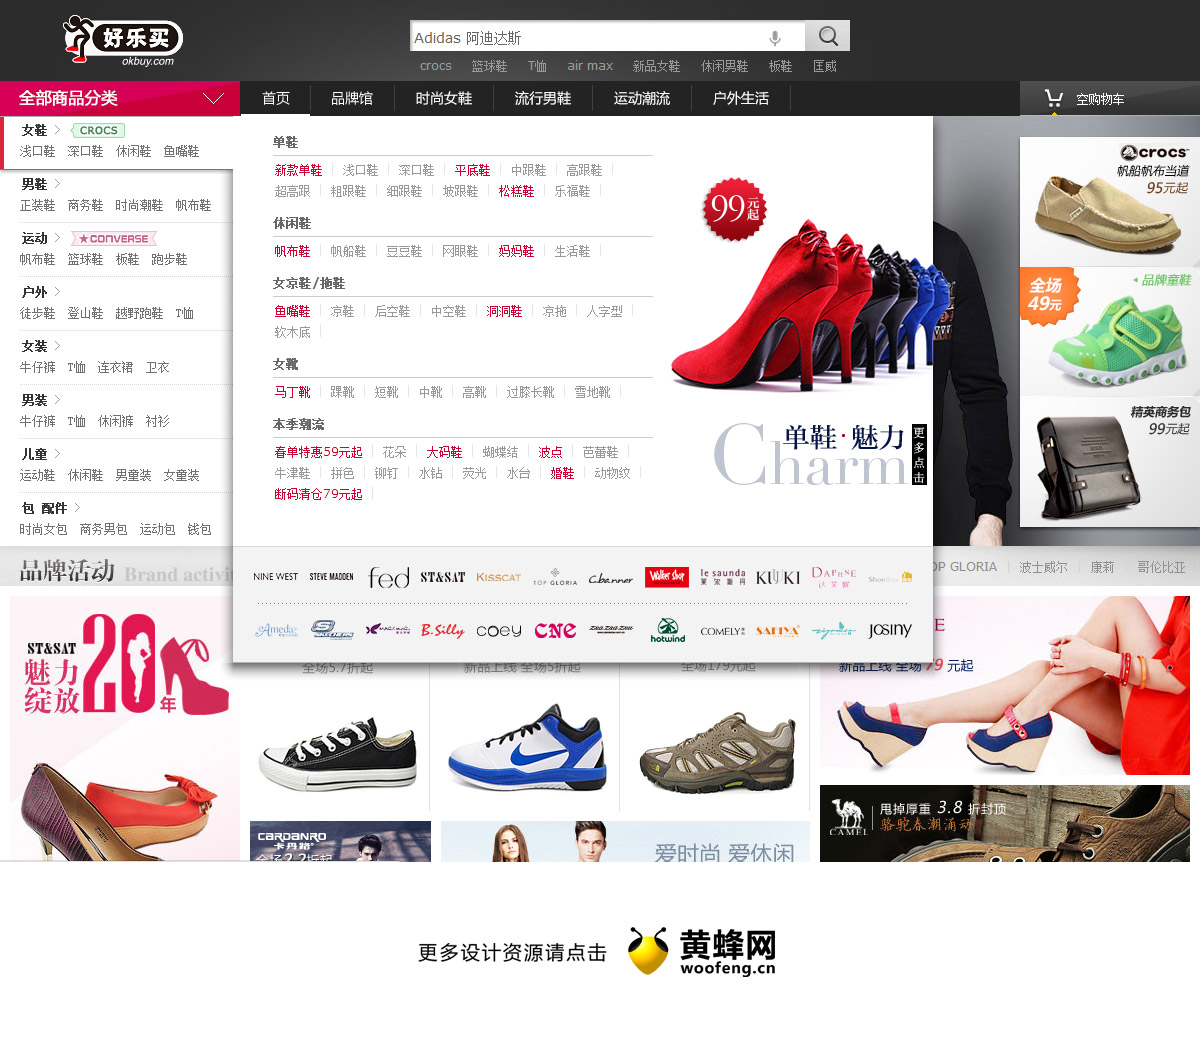 好乐买购物网站导航设计，来源自黄蜂网https://woofeng.cn/webcut/